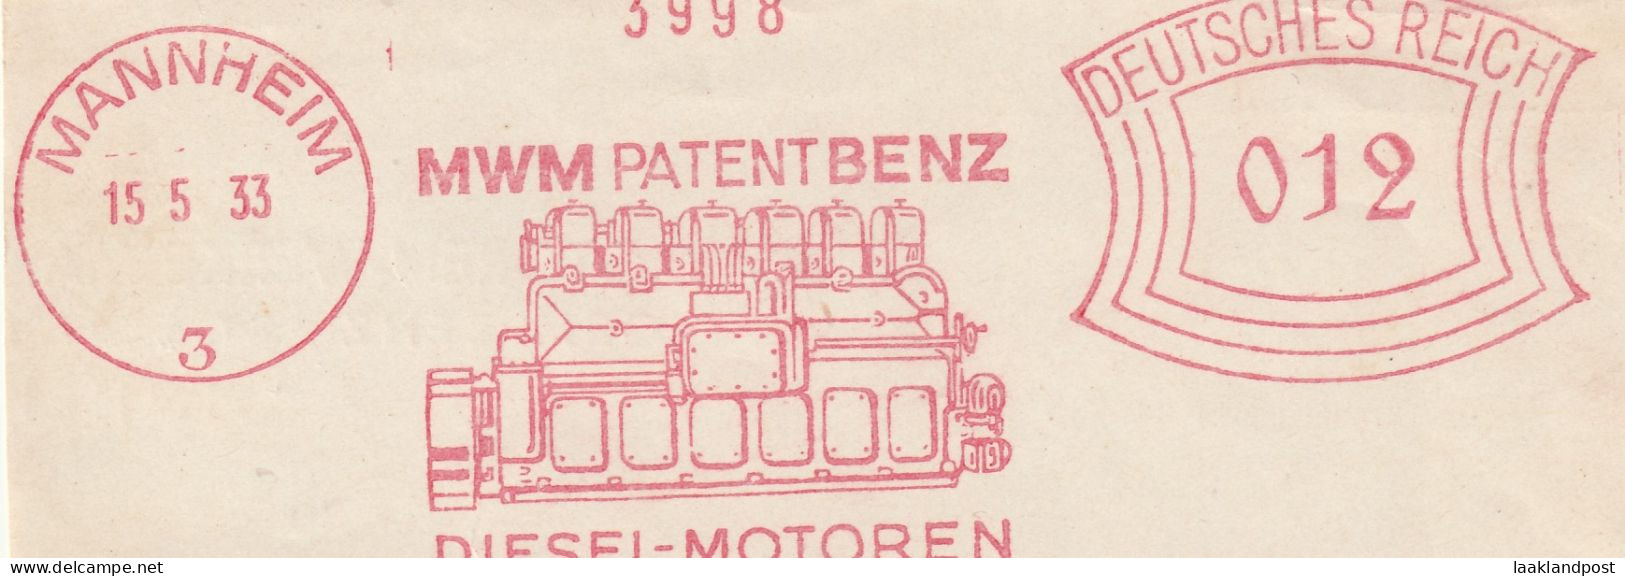 Deutsche Reichpost Nice Cut Meter Freistempel MWM Patent Benz Diesel Motoren, Mannheim 15-5-1933 - Frankeermachines